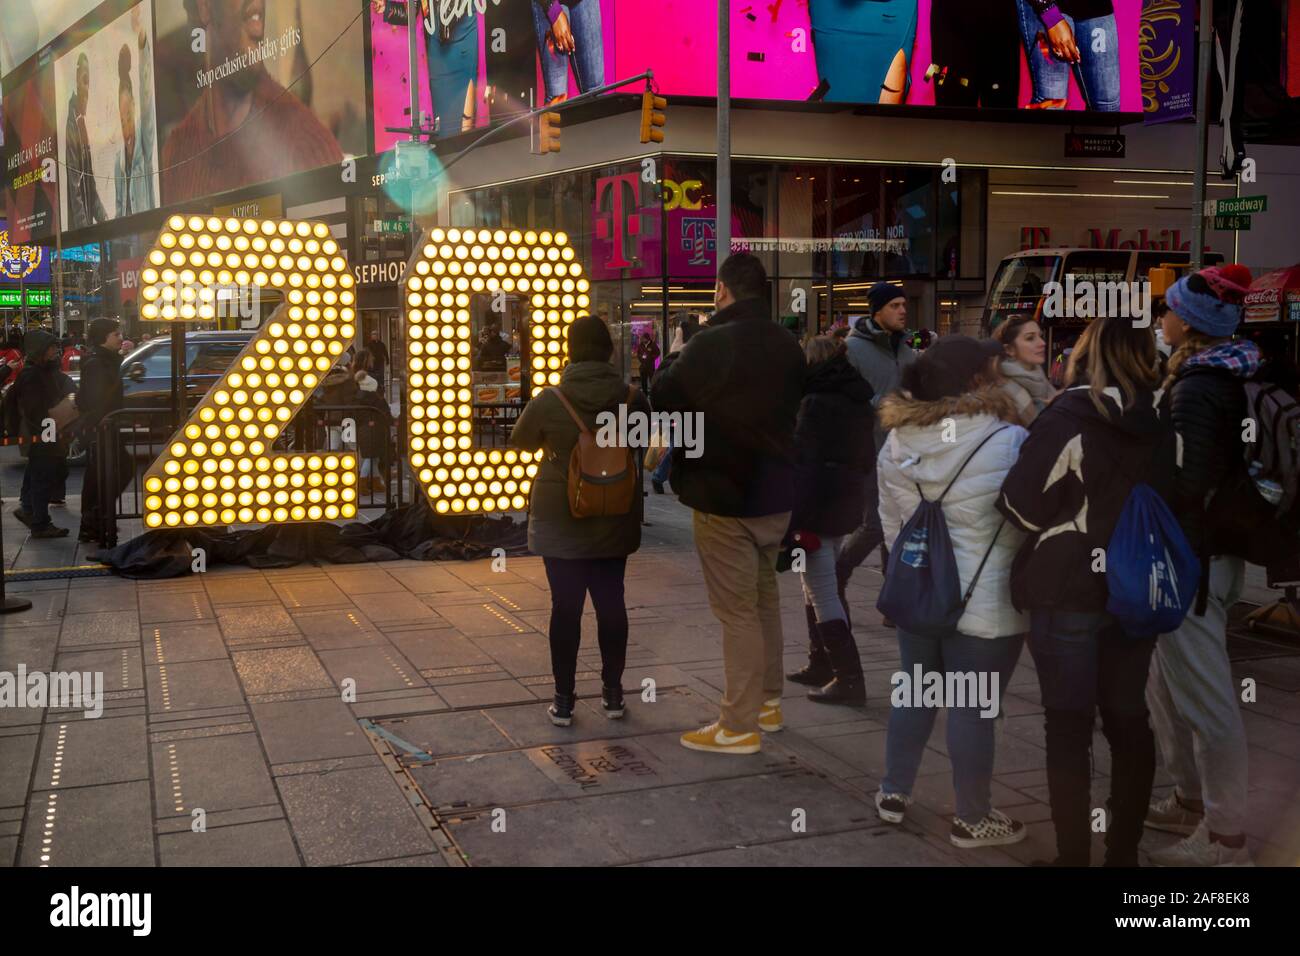 New York,NY/USA-Décembre 12, 2019 Les visiteurs de Times Square à New York posent devant les deux sept pieds de hauteur de chiffres "2" et "0" à Times Square à New York le Mercredi, Décembre 12, 2019 . Le "20" fera partie de l'écran led au sommet d'un Times Square, qui s'allume jusqu'à minuit le 1er janvier 2020 de l'orthographe de "libérer" la nouvelle année. Le nombre de sept pieds de haut utiliser des ampoules LED économe en énergie qui durera toute l'année, ne jamais avoir à être modifié. (© Richard B. Levine) Banque D'Images